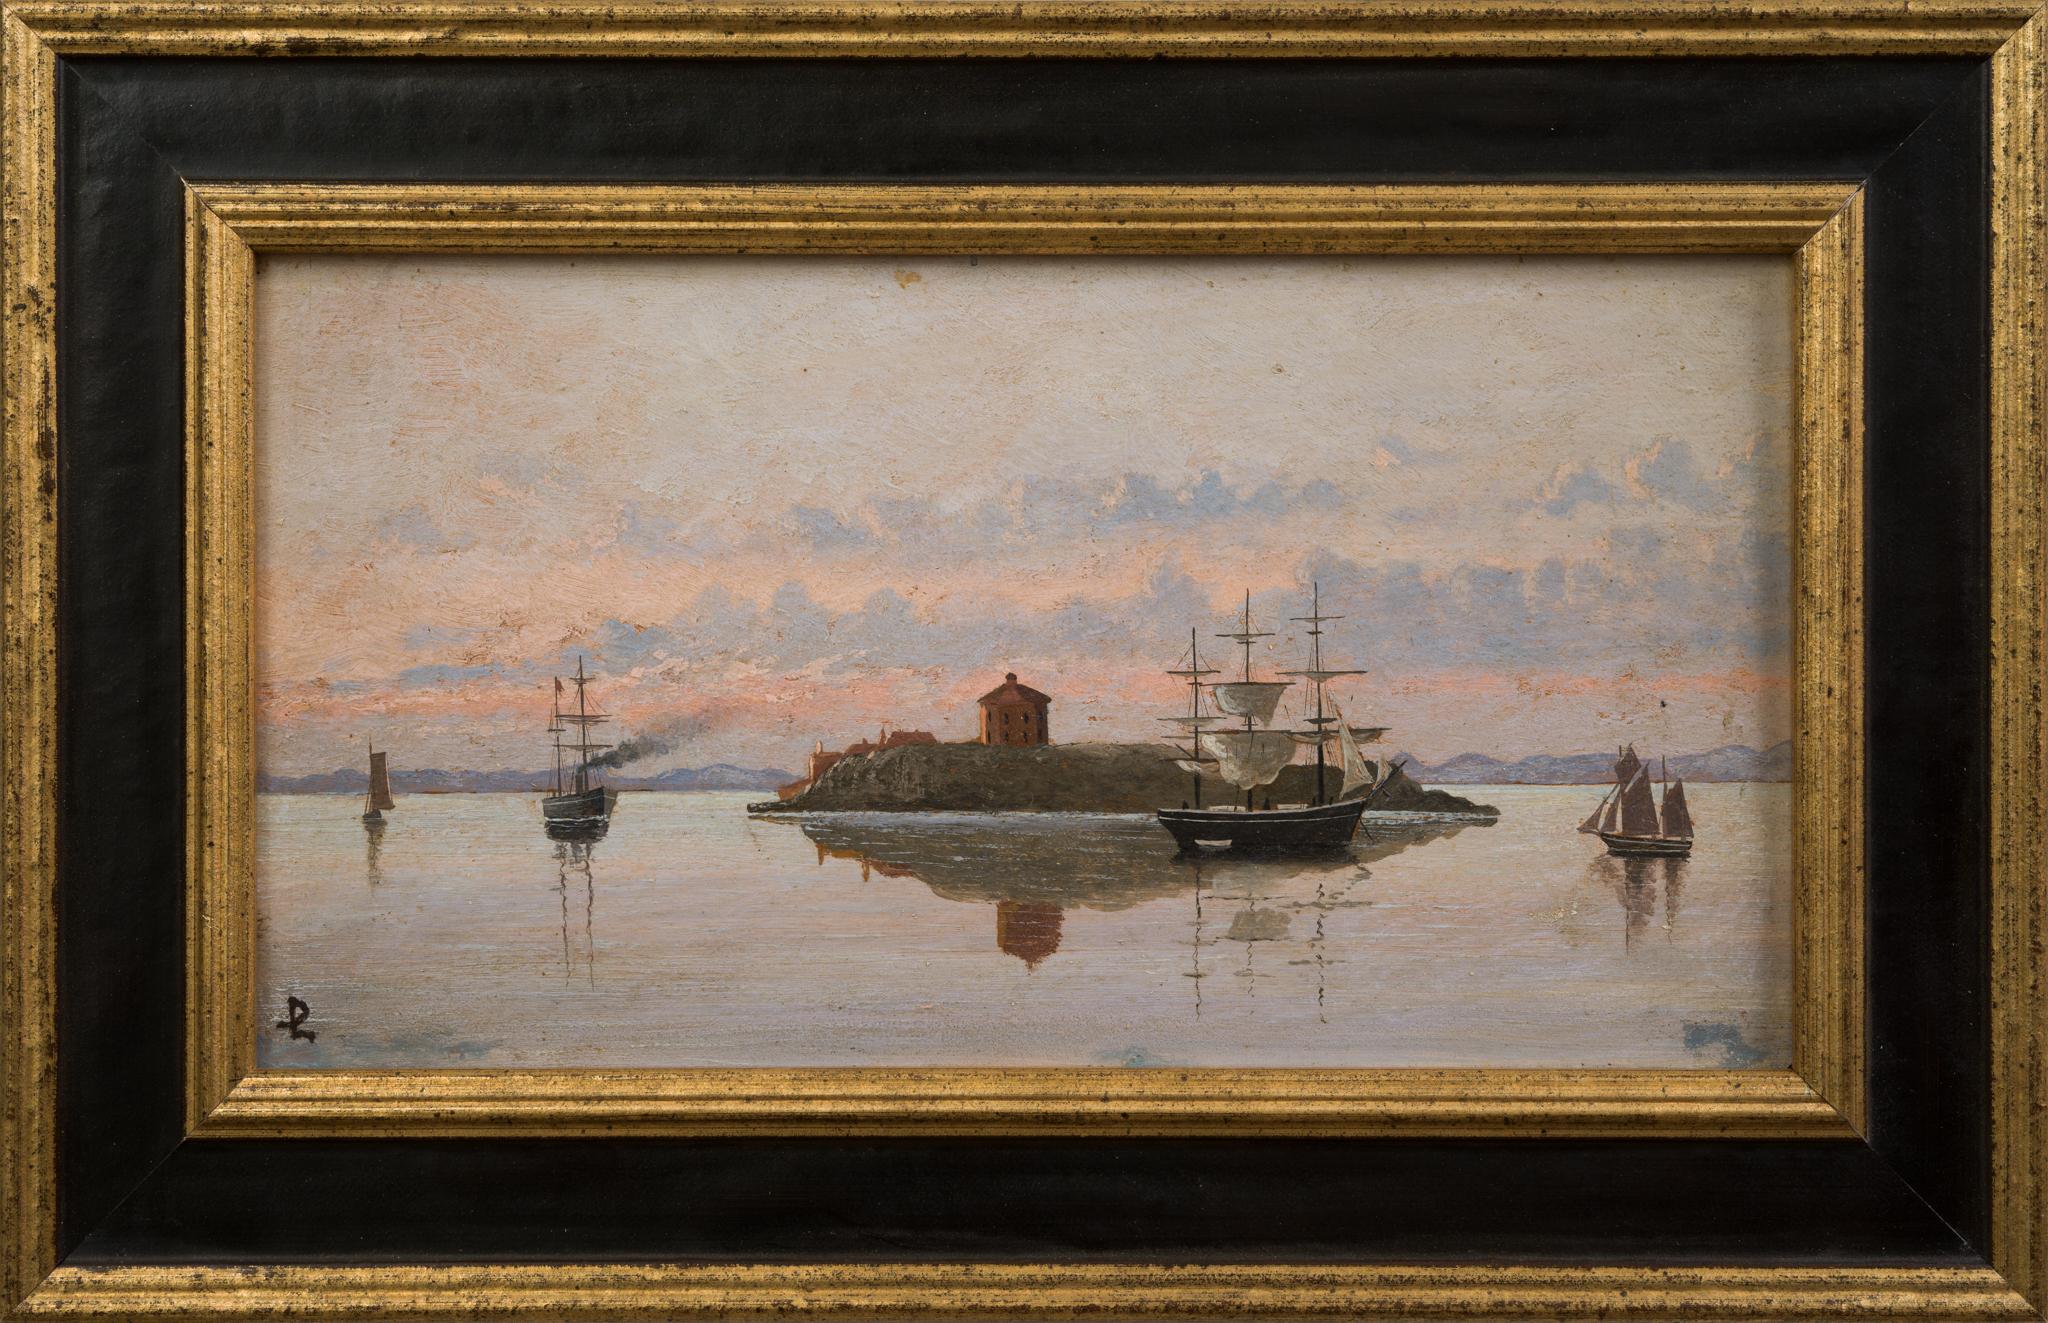 Dieses exquisite Gemälde von Per Linér, einem bedeutenden schwedischen Künstler, der im 19. Jahrhundert geboren wurde, fängt auf beredte Weise die heitere maritime Essenz der Region Helsingborg ein. Die Leinwand wird durch eine Auswahl von Schiffen